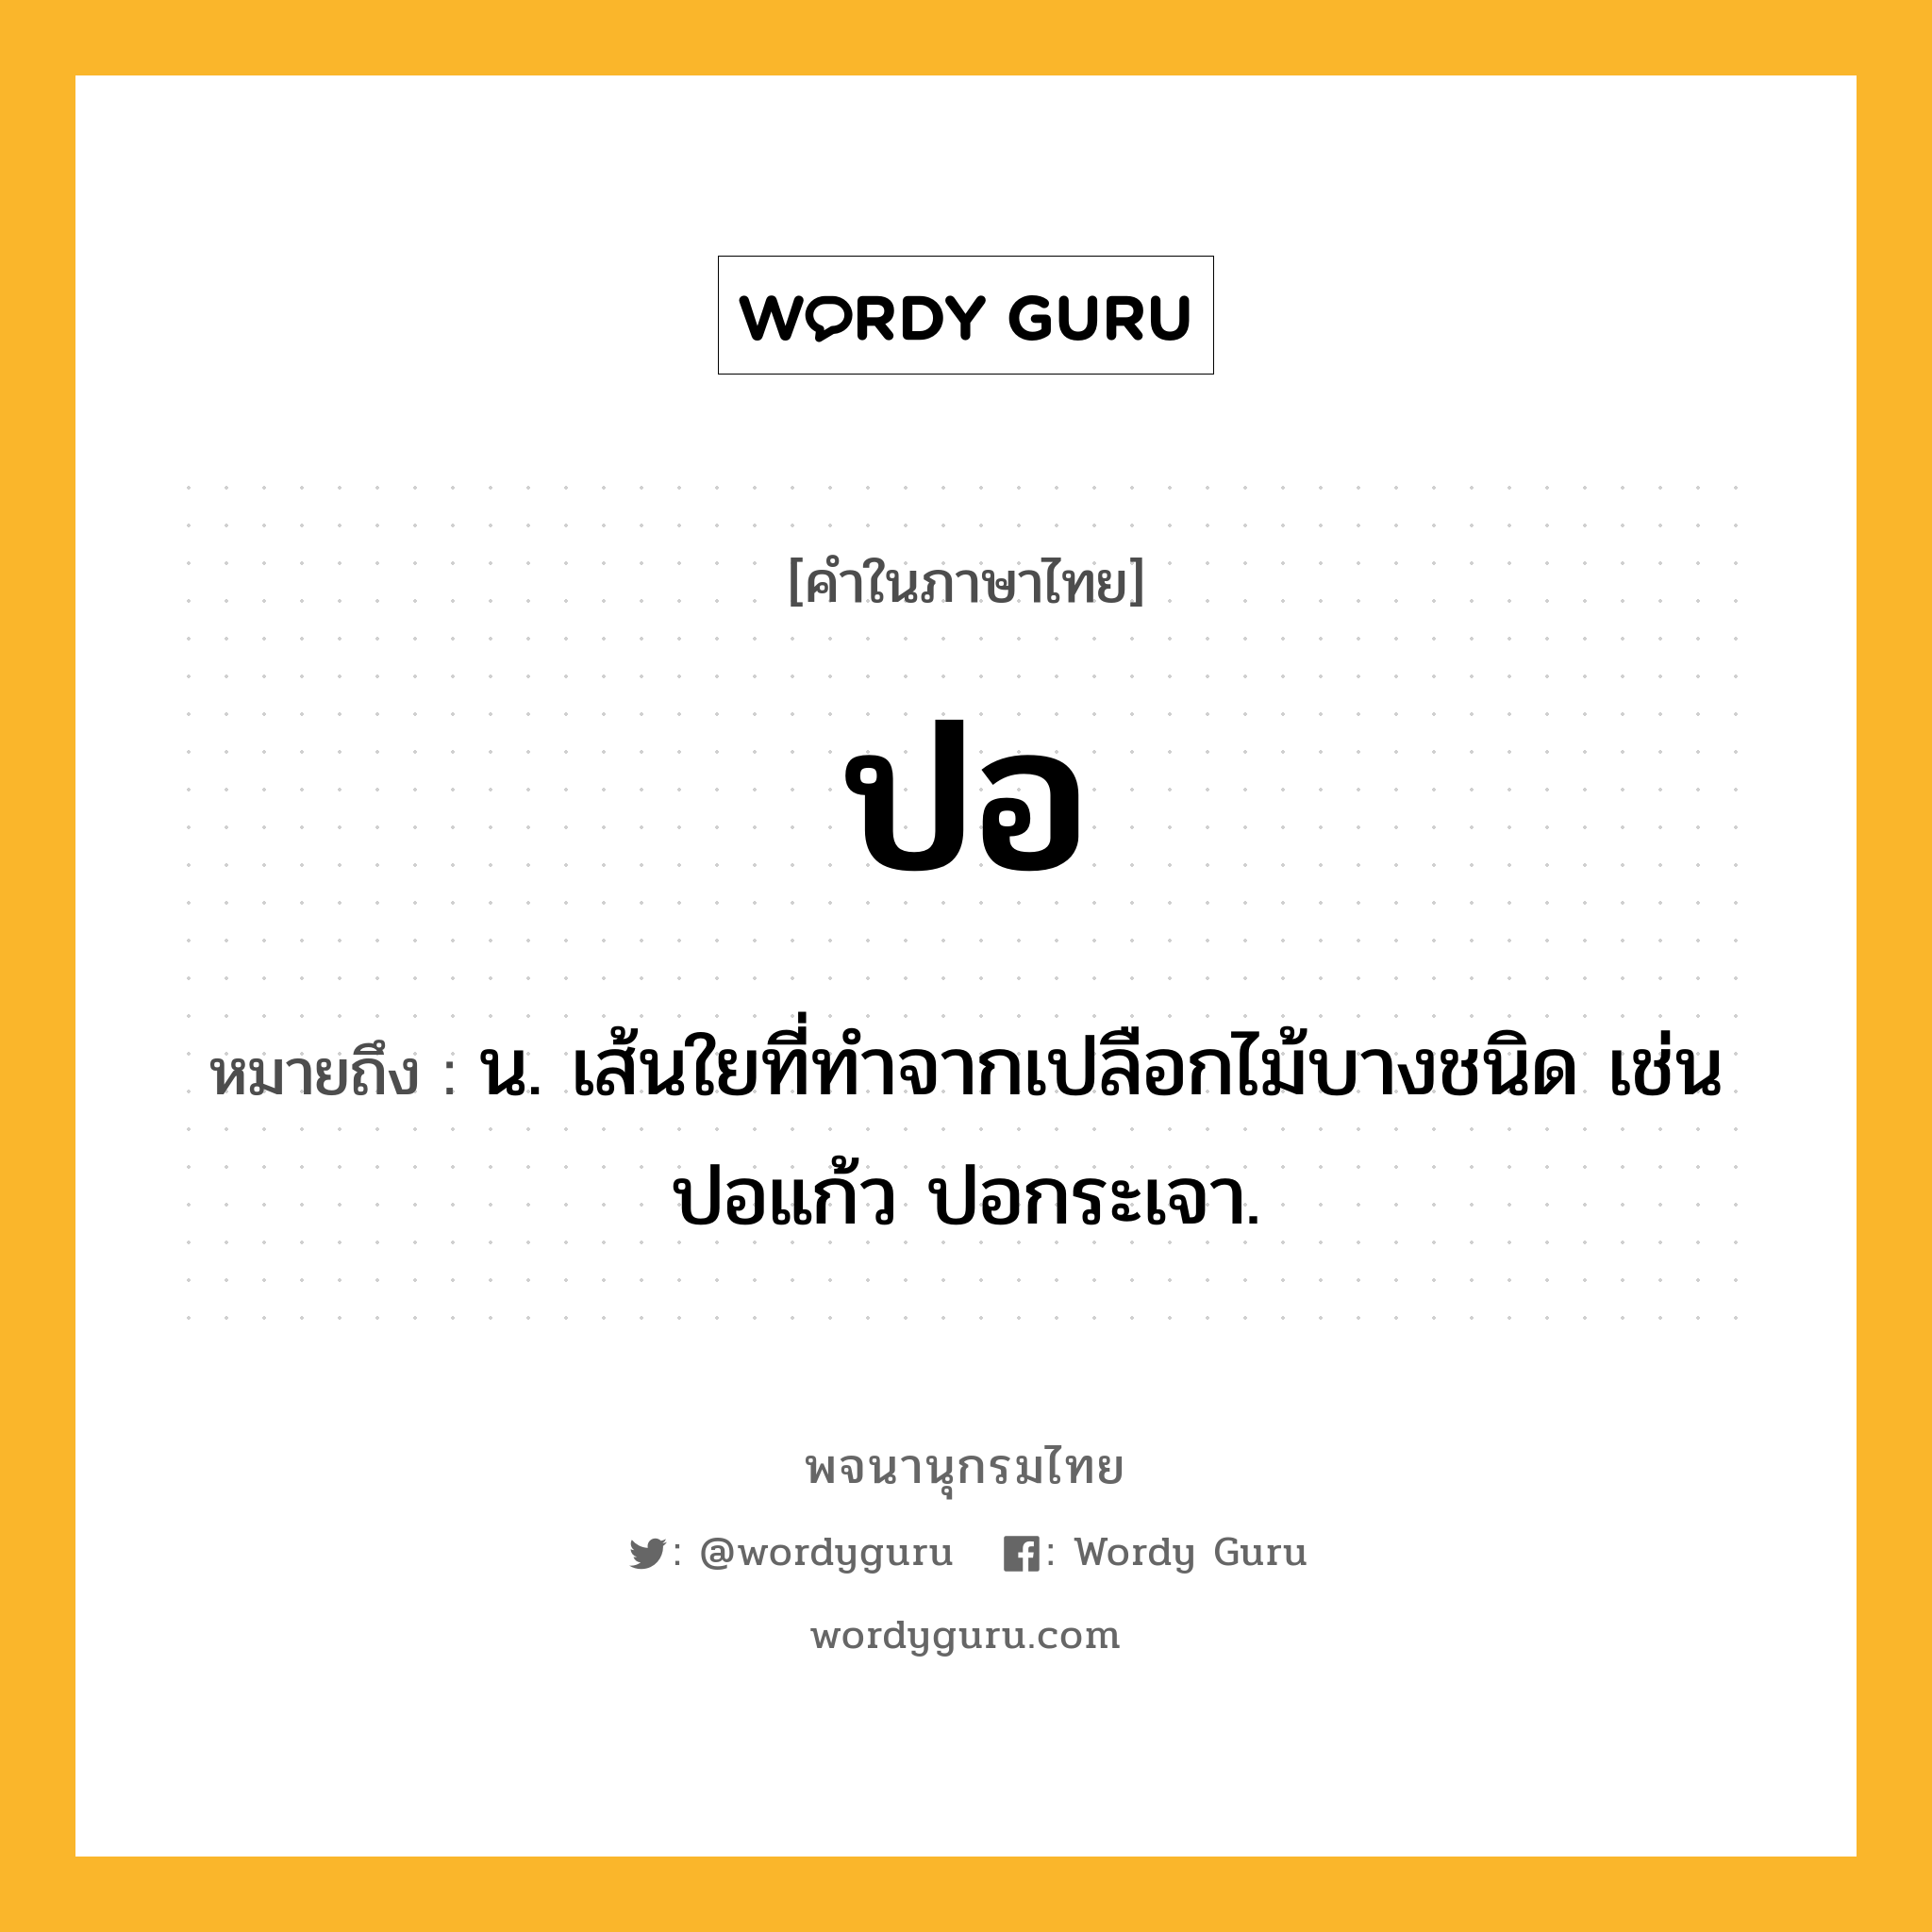 ปอ หมายถึงอะไร?, คำในภาษาไทย ปอ หมายถึง น. เส้นใยที่ทําจากเปลือกไม้บางชนิด เช่น ปอแก้ว ปอกระเจา.